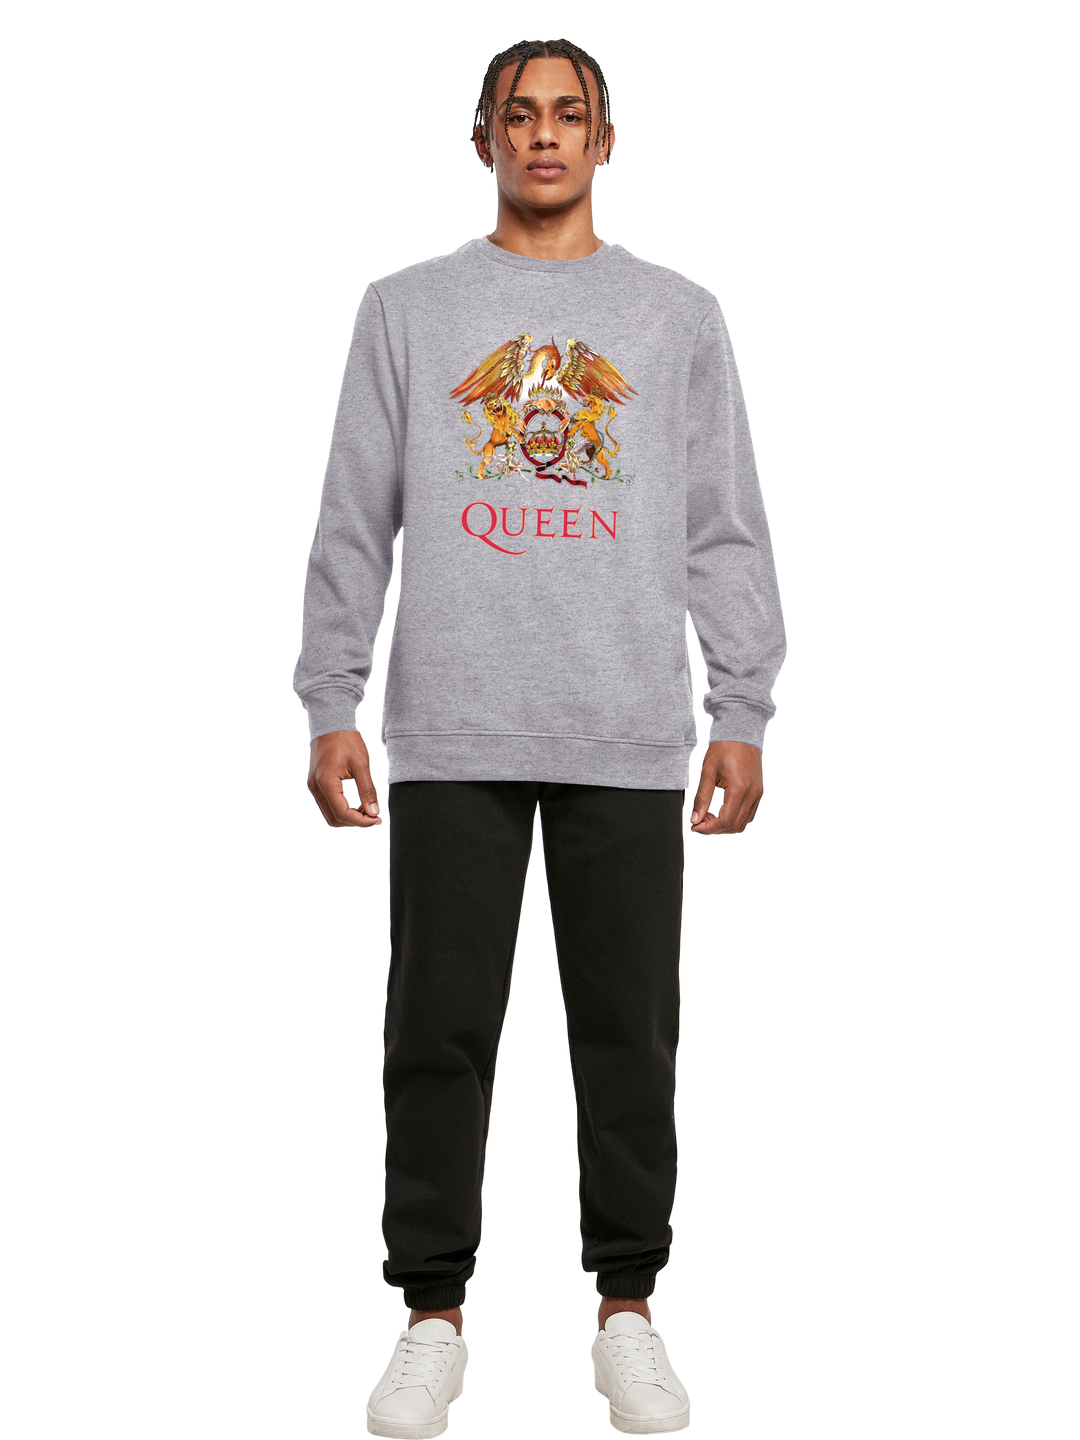 Queen Sweatshirt | Classic Crest Herren | Longsleeve Sweater